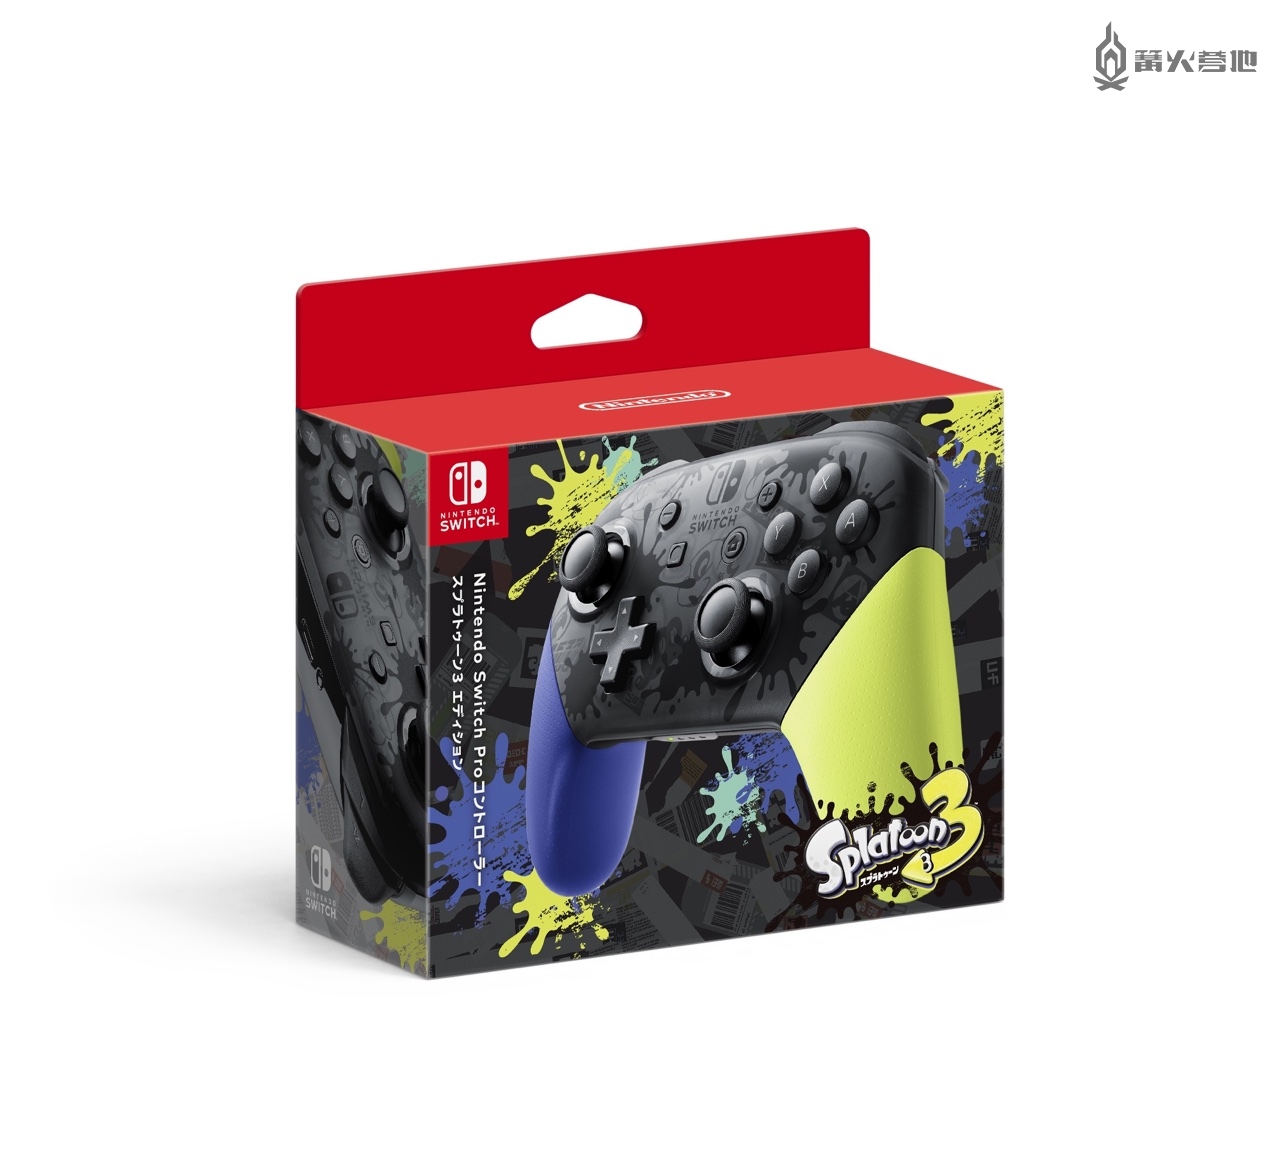 《斯普拉遁 3》限定配色 Switch OLED 主机、Pro 手柄 8 月底抢先发售